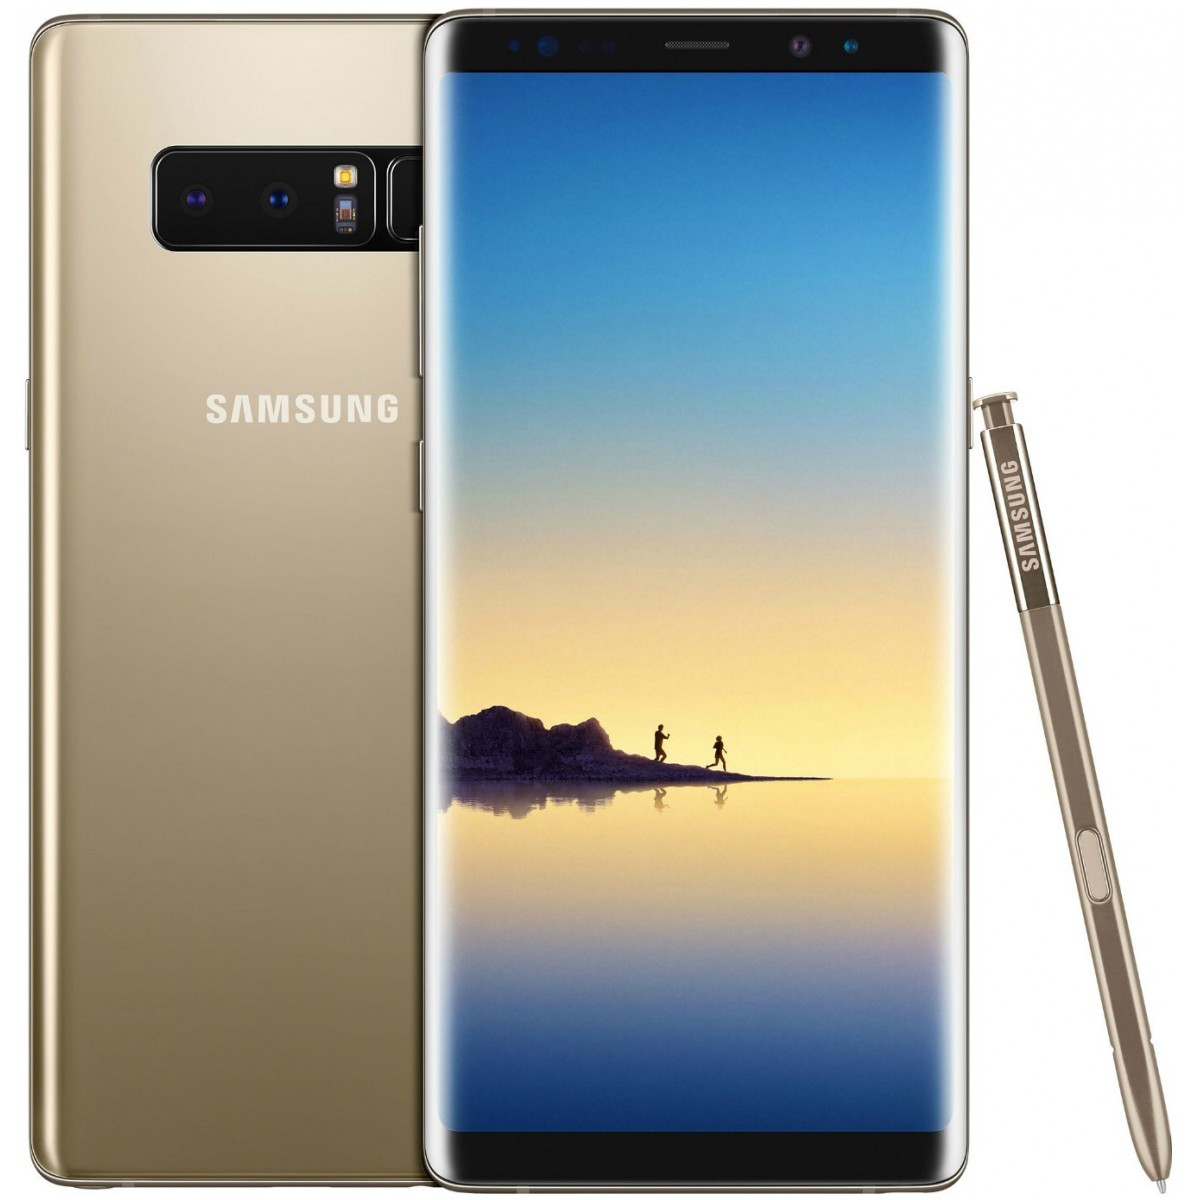 Samsung Galaxy Note 8 6/64GB Gold (SM-N950F) Single Sim